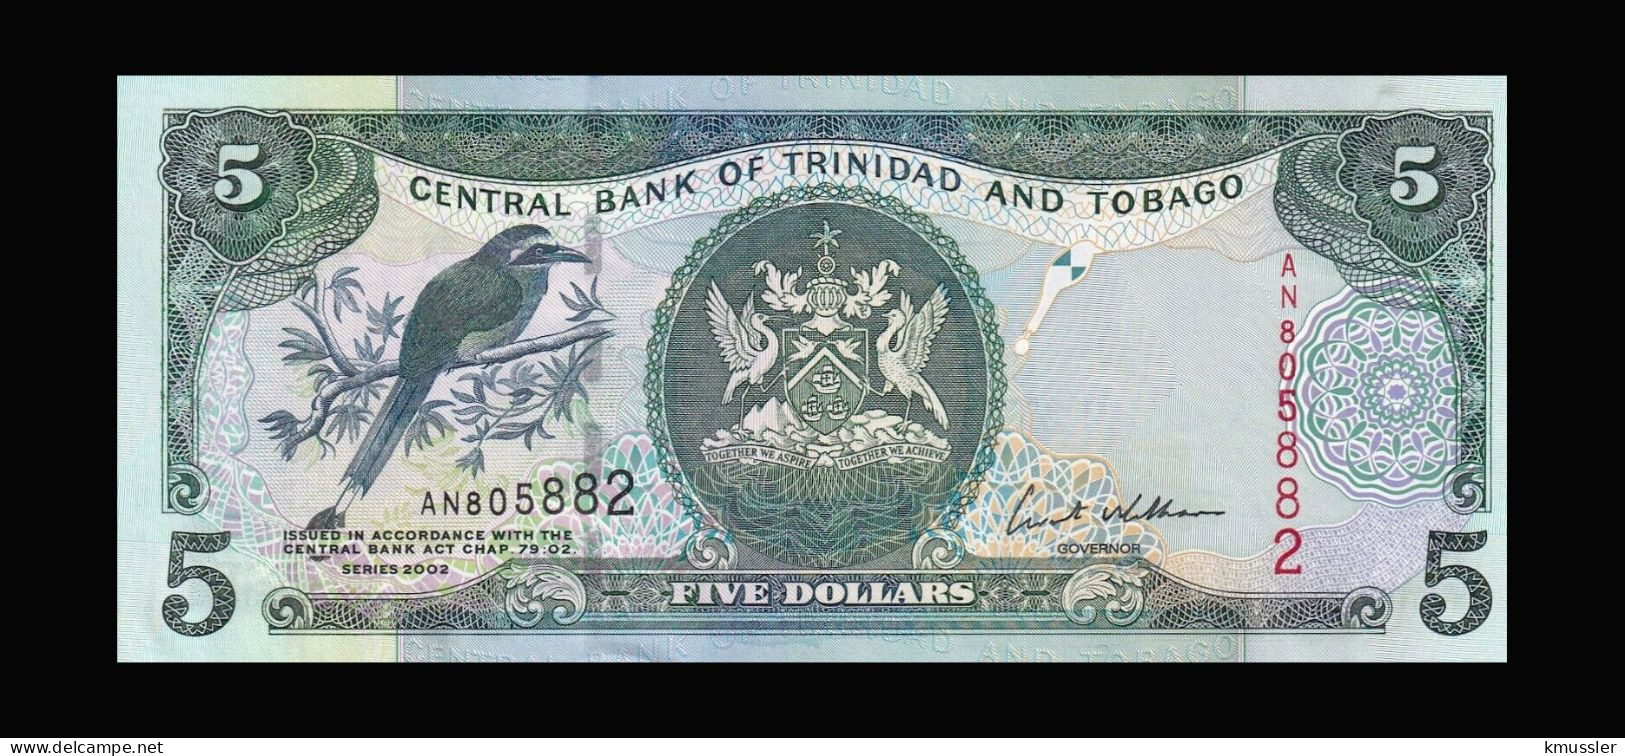 # # # Banknote Trinidad Und Tobago 5 Dollars 2002 # # # - Trinité & Tobago